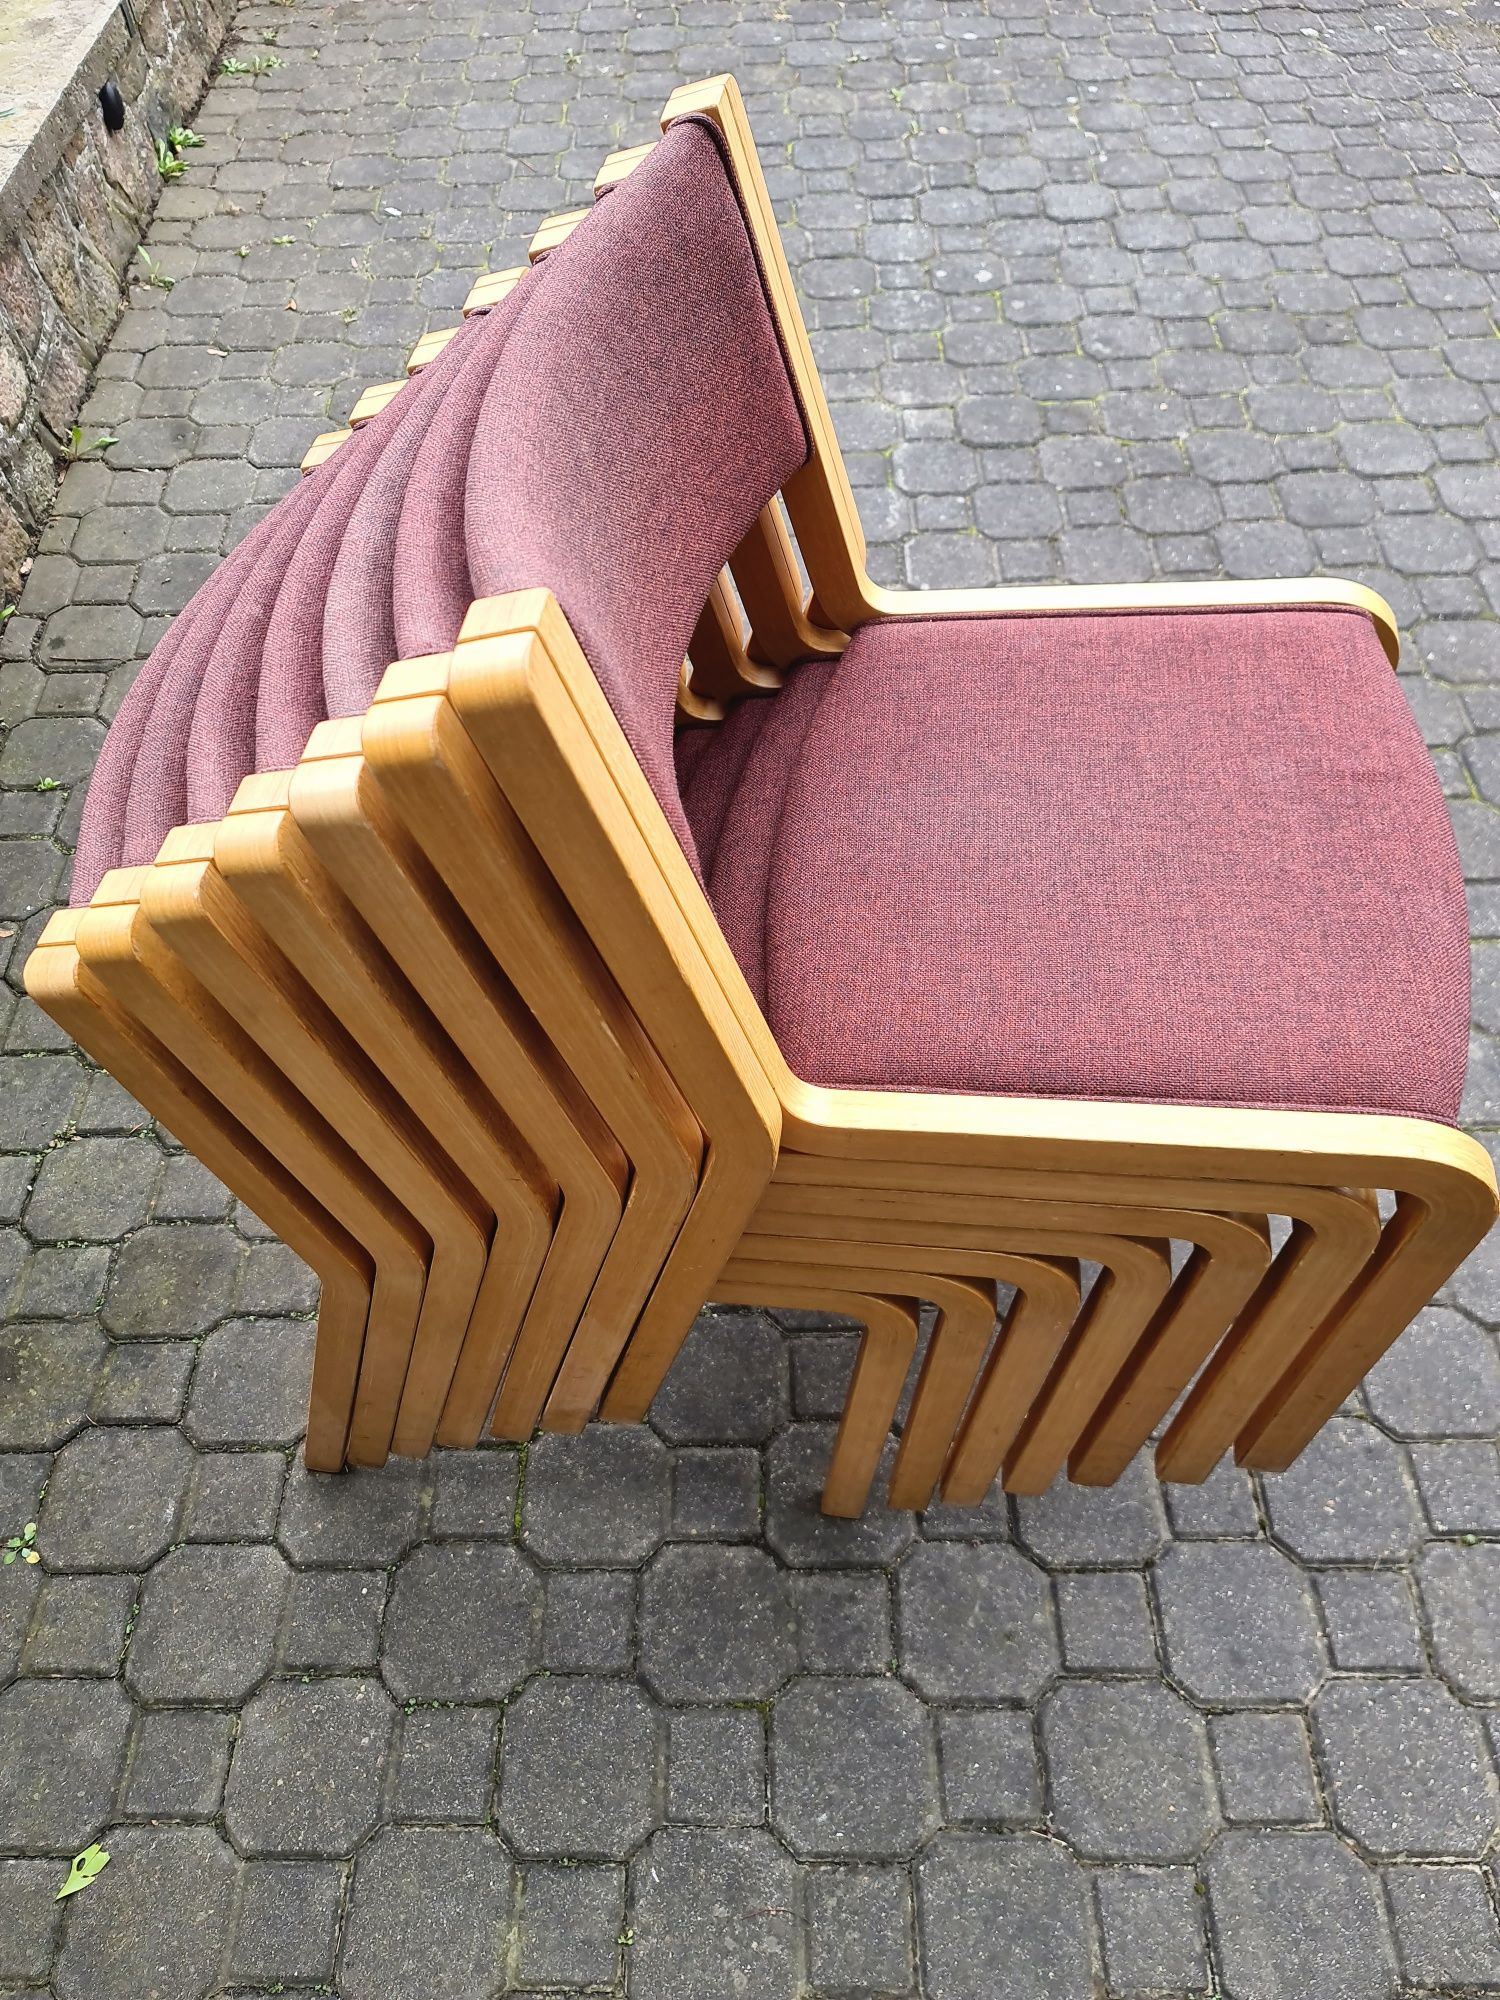 Duńskie krzesła Magnus Olesen 17 sztuk